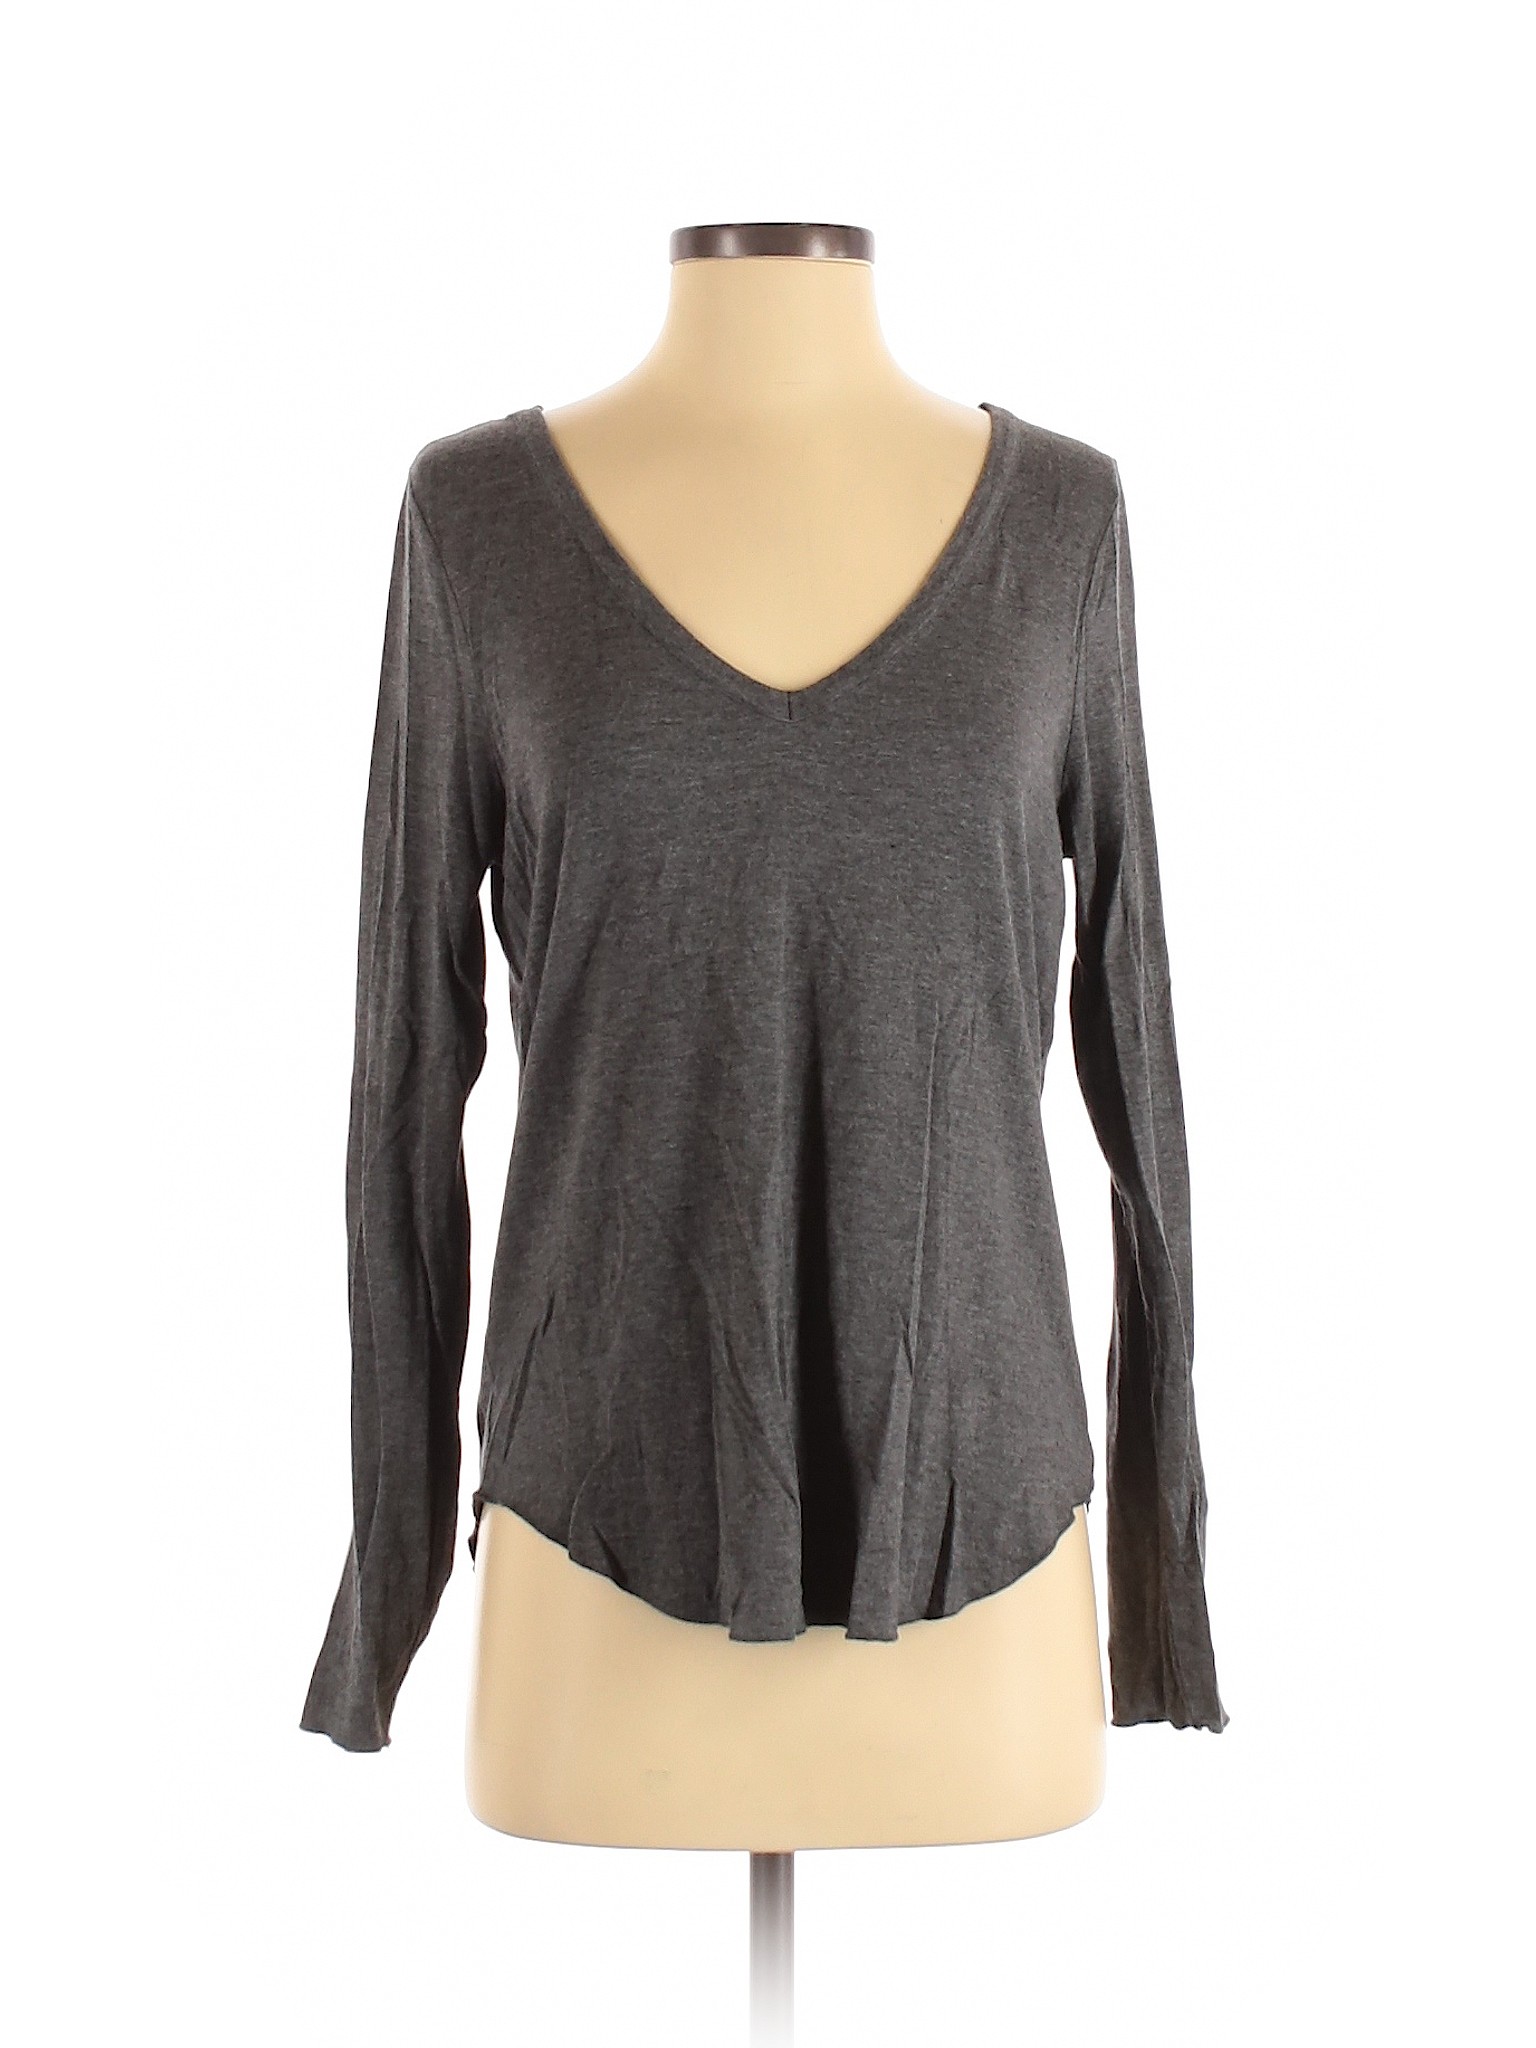 Assorted Brands Women Gray Long Sleeve Top S | eBay